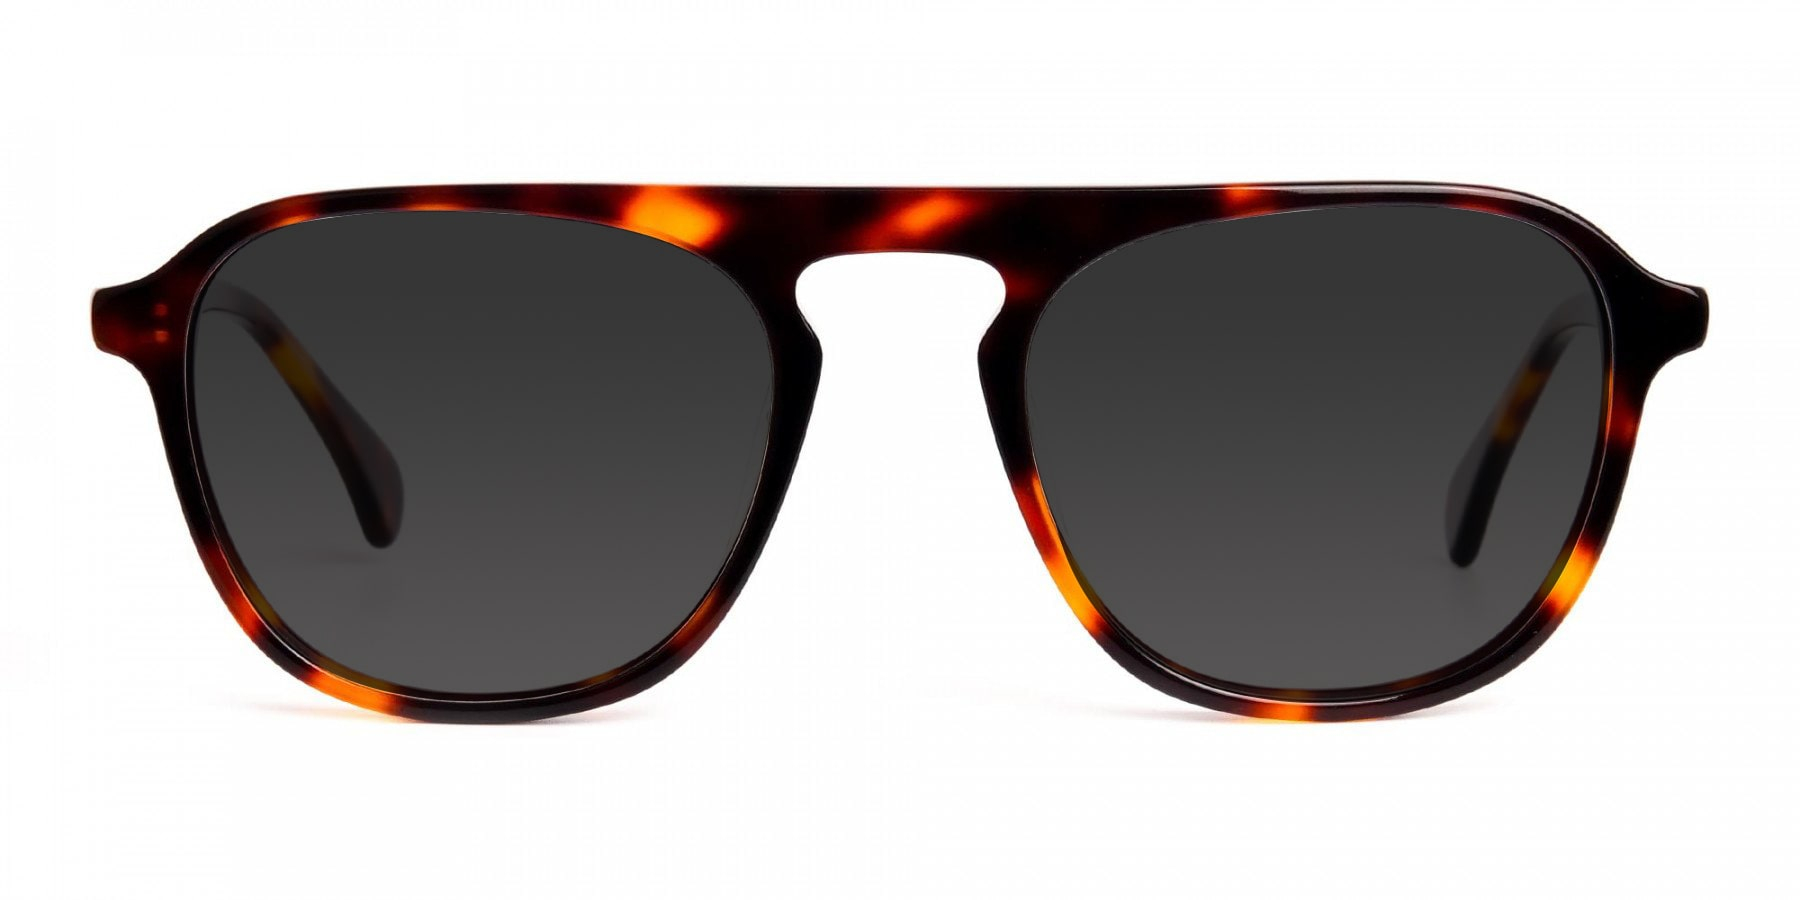 keyhole tortoiseshell sunglasses-1